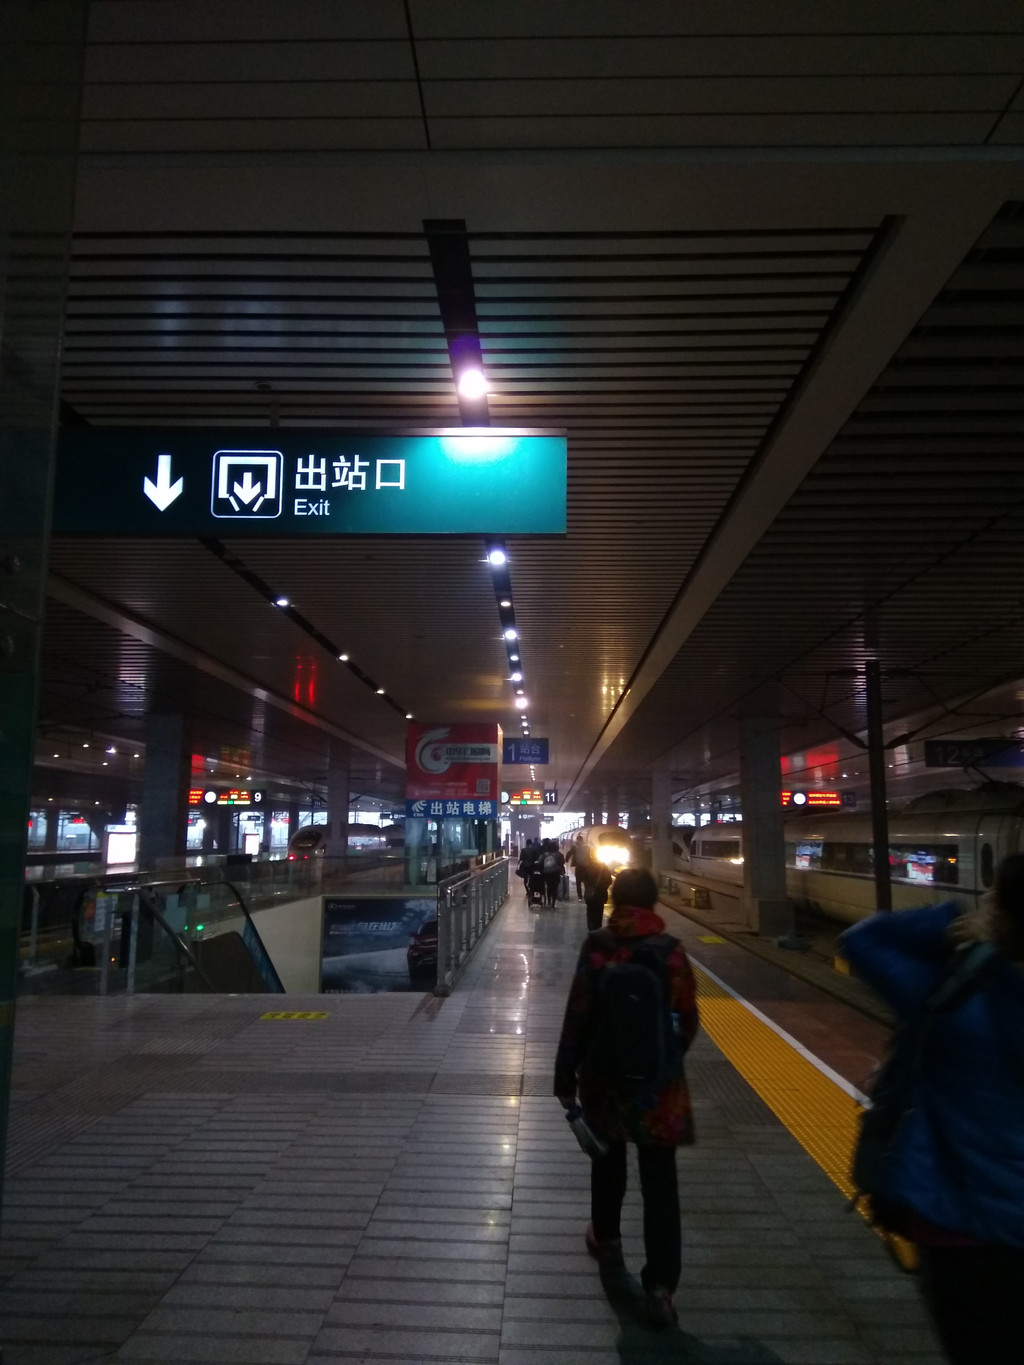 从长沙南站坐高铁到达衡山西站,出站口就有大巴车直达衡山景区,坐满就